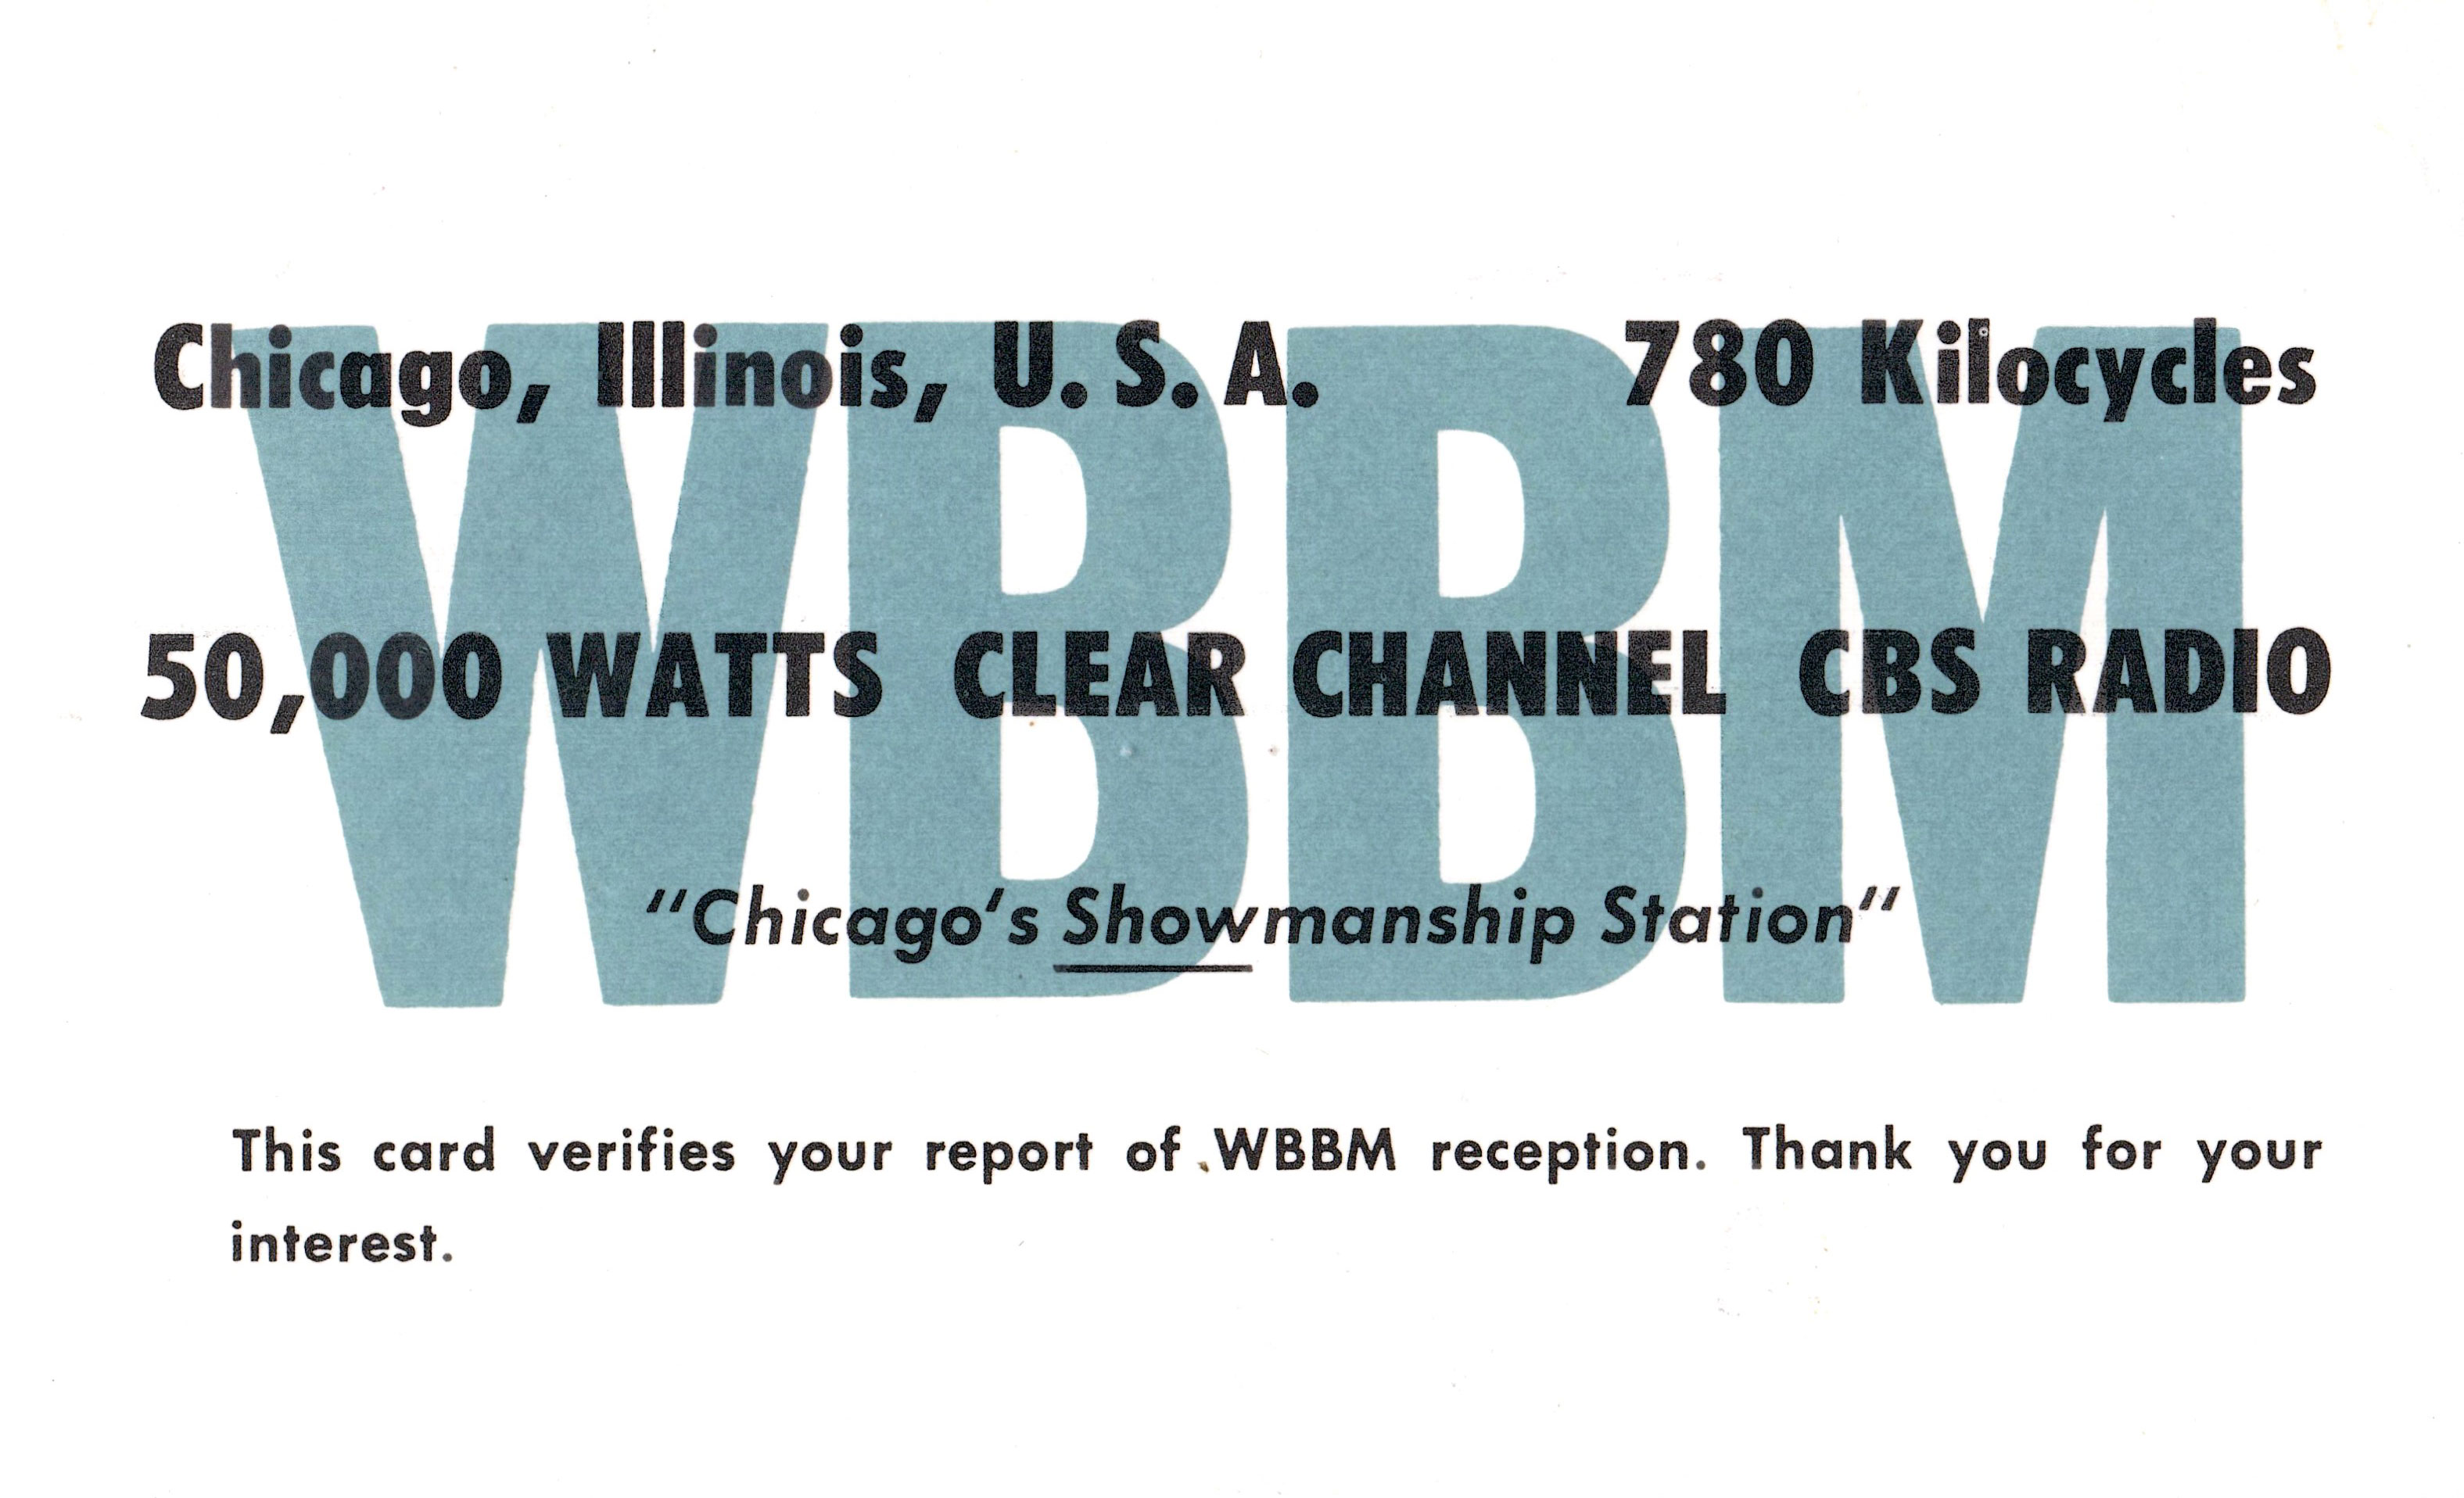 WBBM Radio 780 Chicago, Illinois